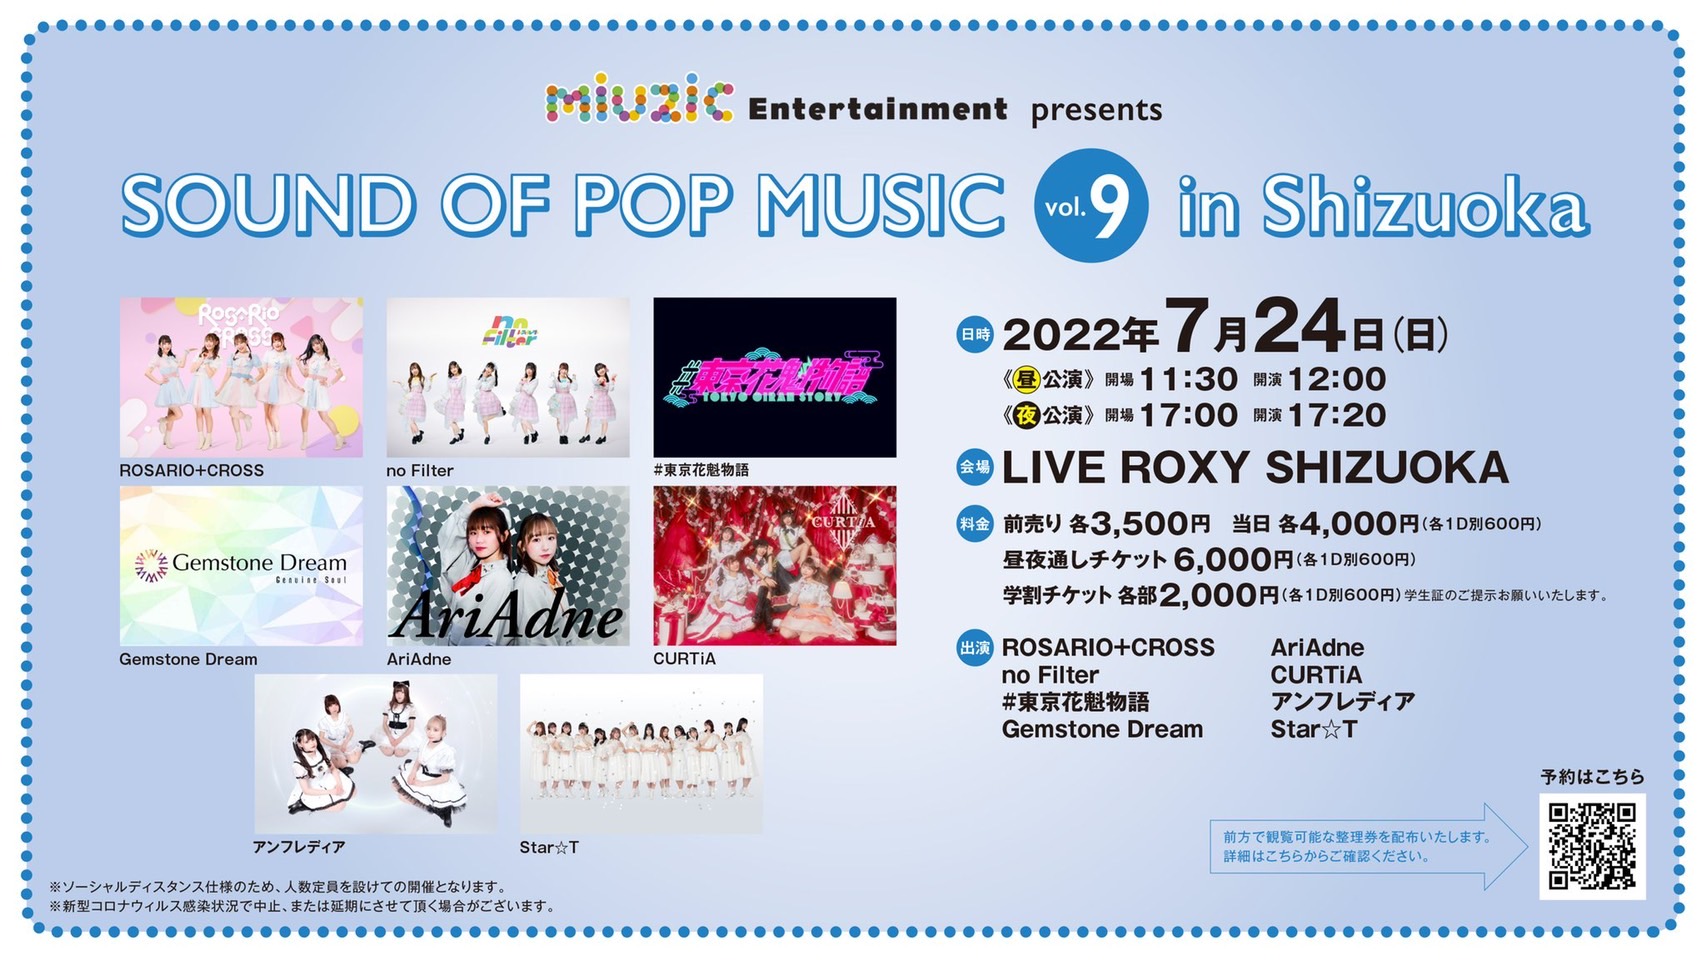 《夜公演》7/24(日) miuzic Entertainment presents 「SOUND OF POP MUSIC vol.9 in Shizuoka」